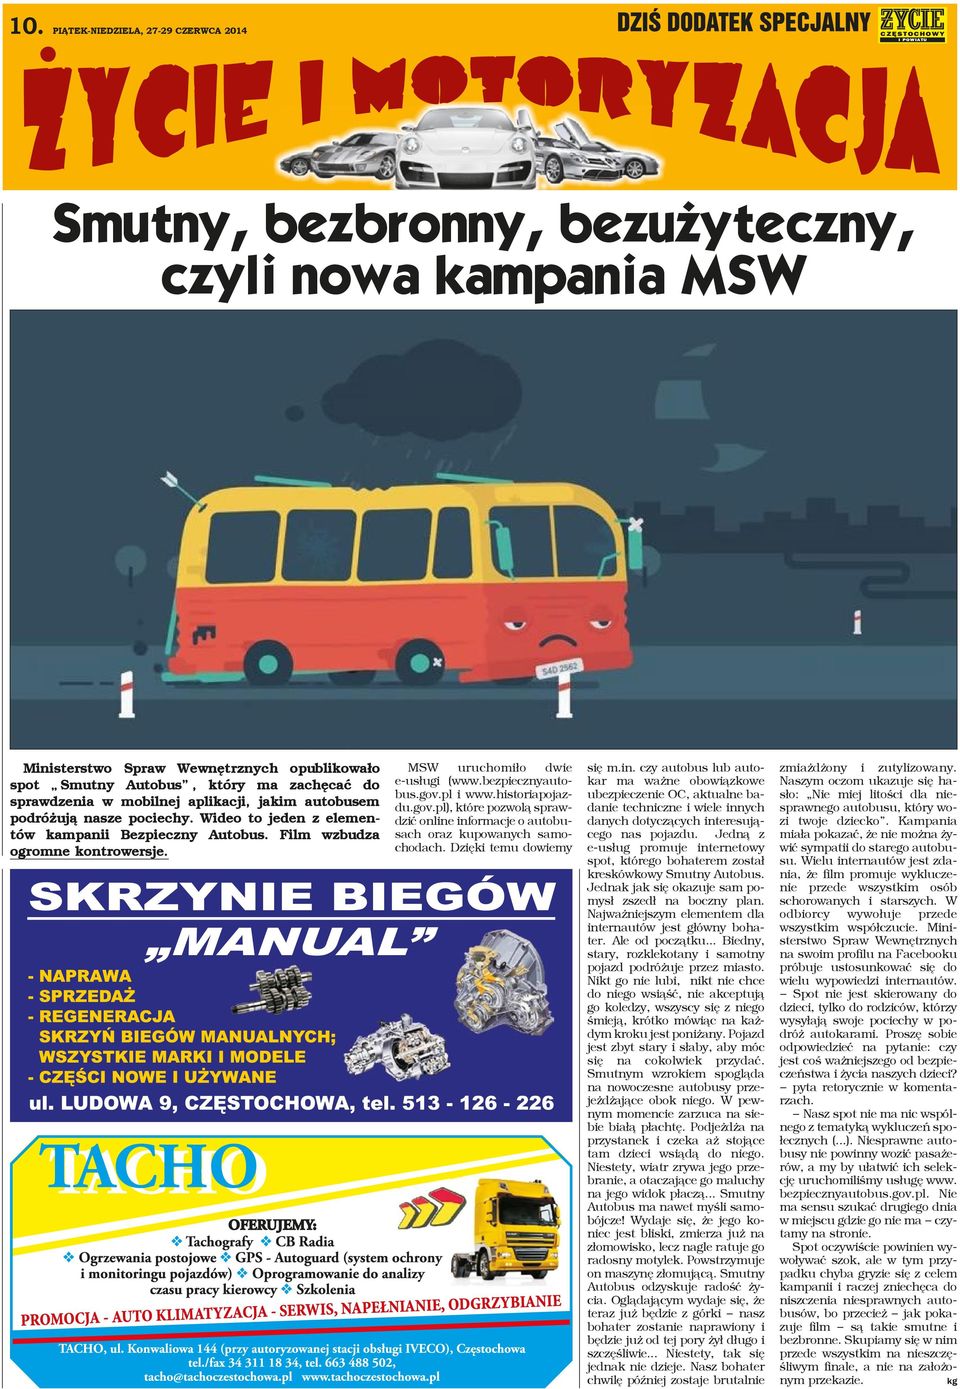 bezpiecznyautobus.gov.pl i www.historiapojazdu.gov.pl), które pozwolą sprawdzić online